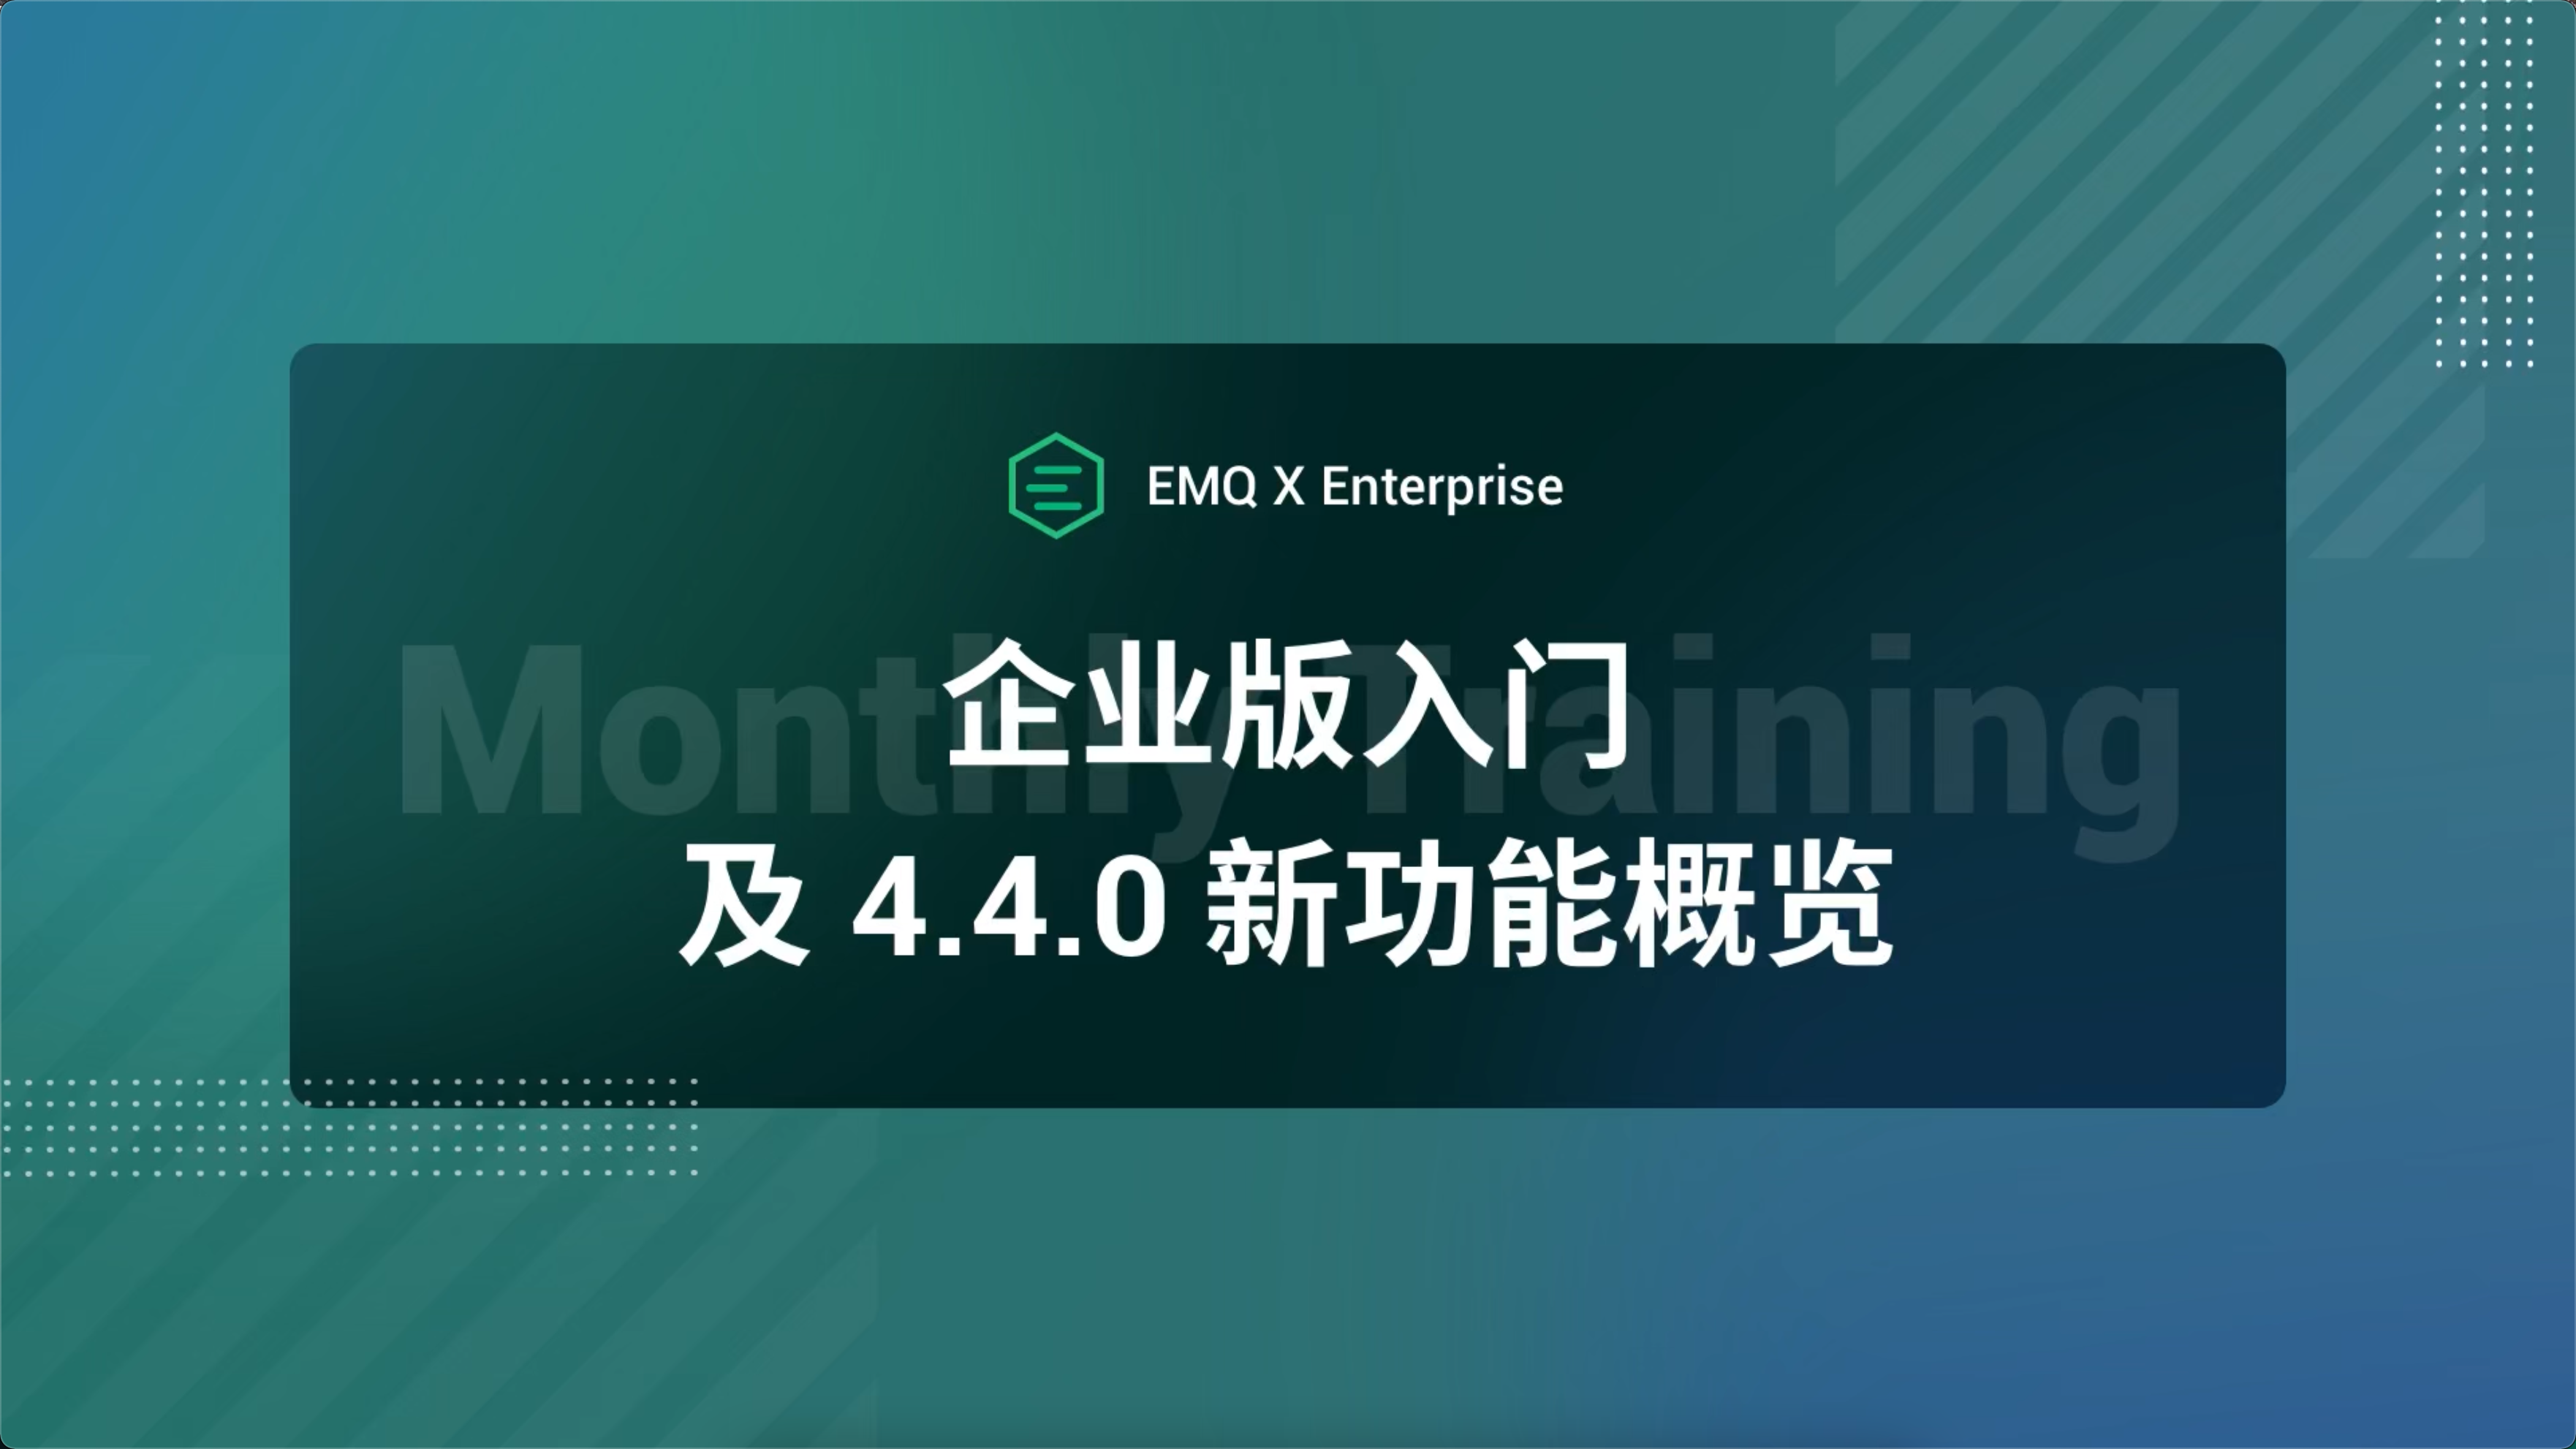 EMQ X 企业版入门培训及 4.4.0 新功能概览